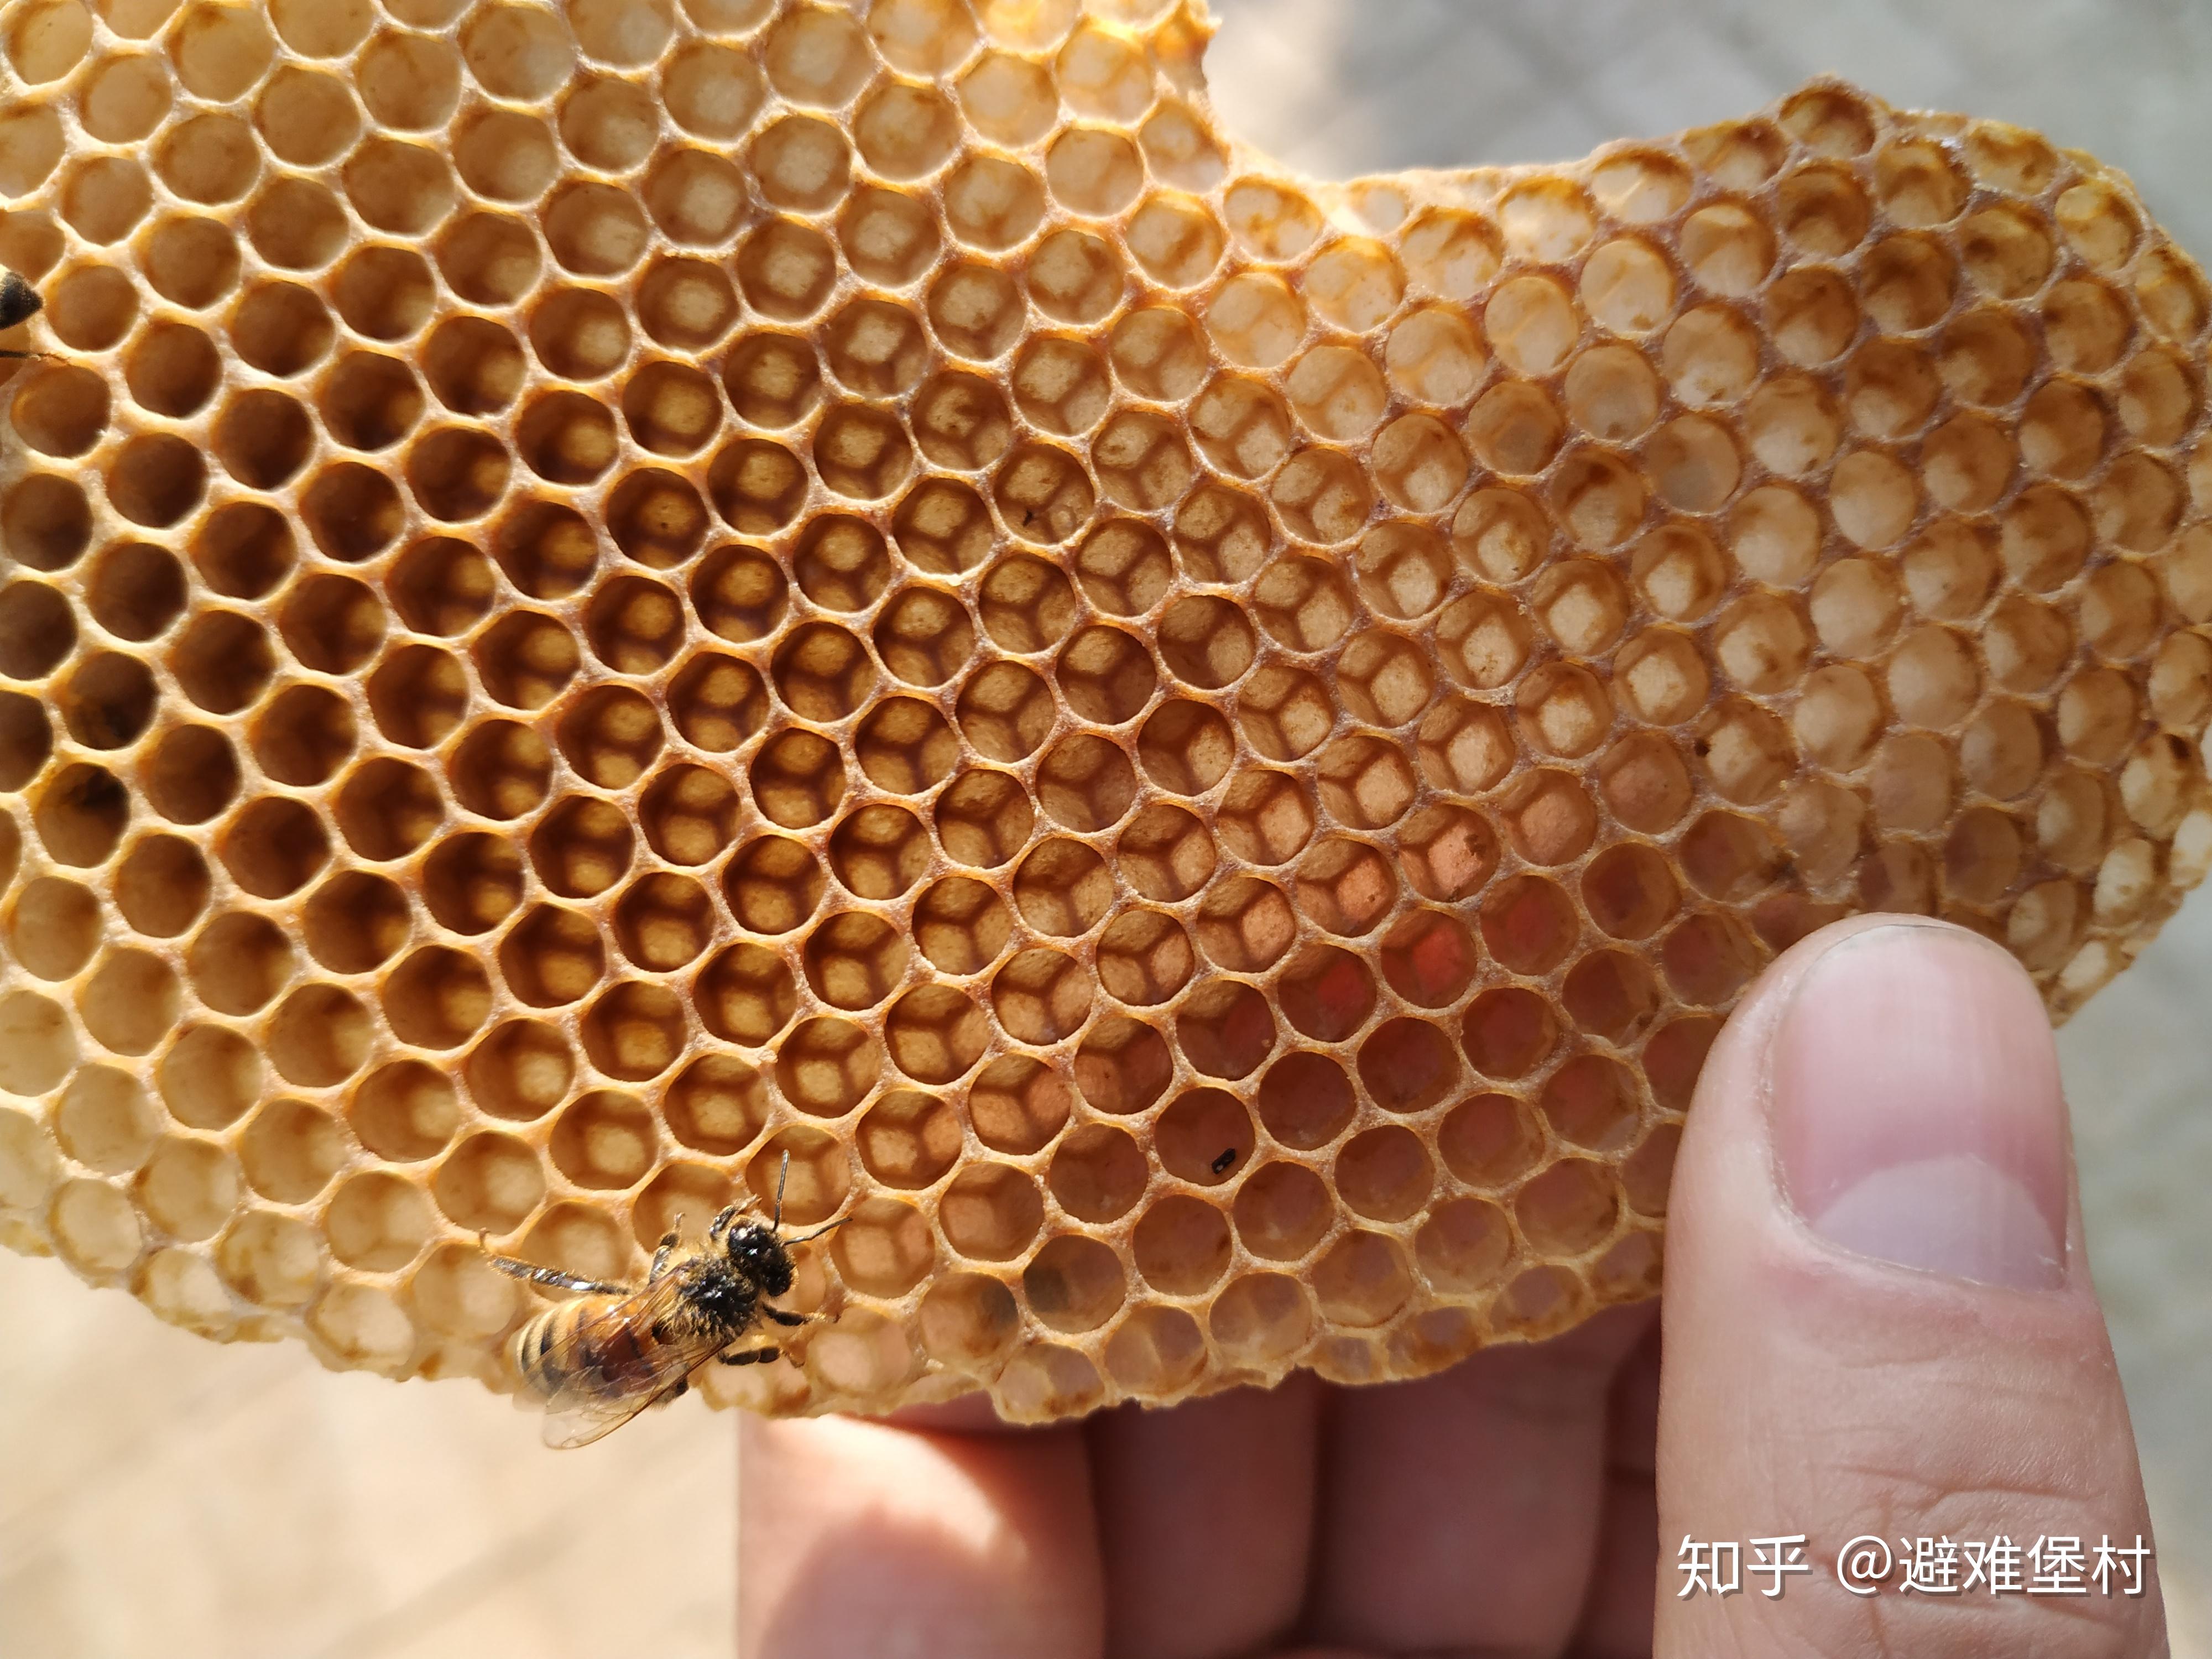 蜂蜜是怎样形成的，蜂蜜的神秘生成之旅揭秘 - 哔哩哔哩